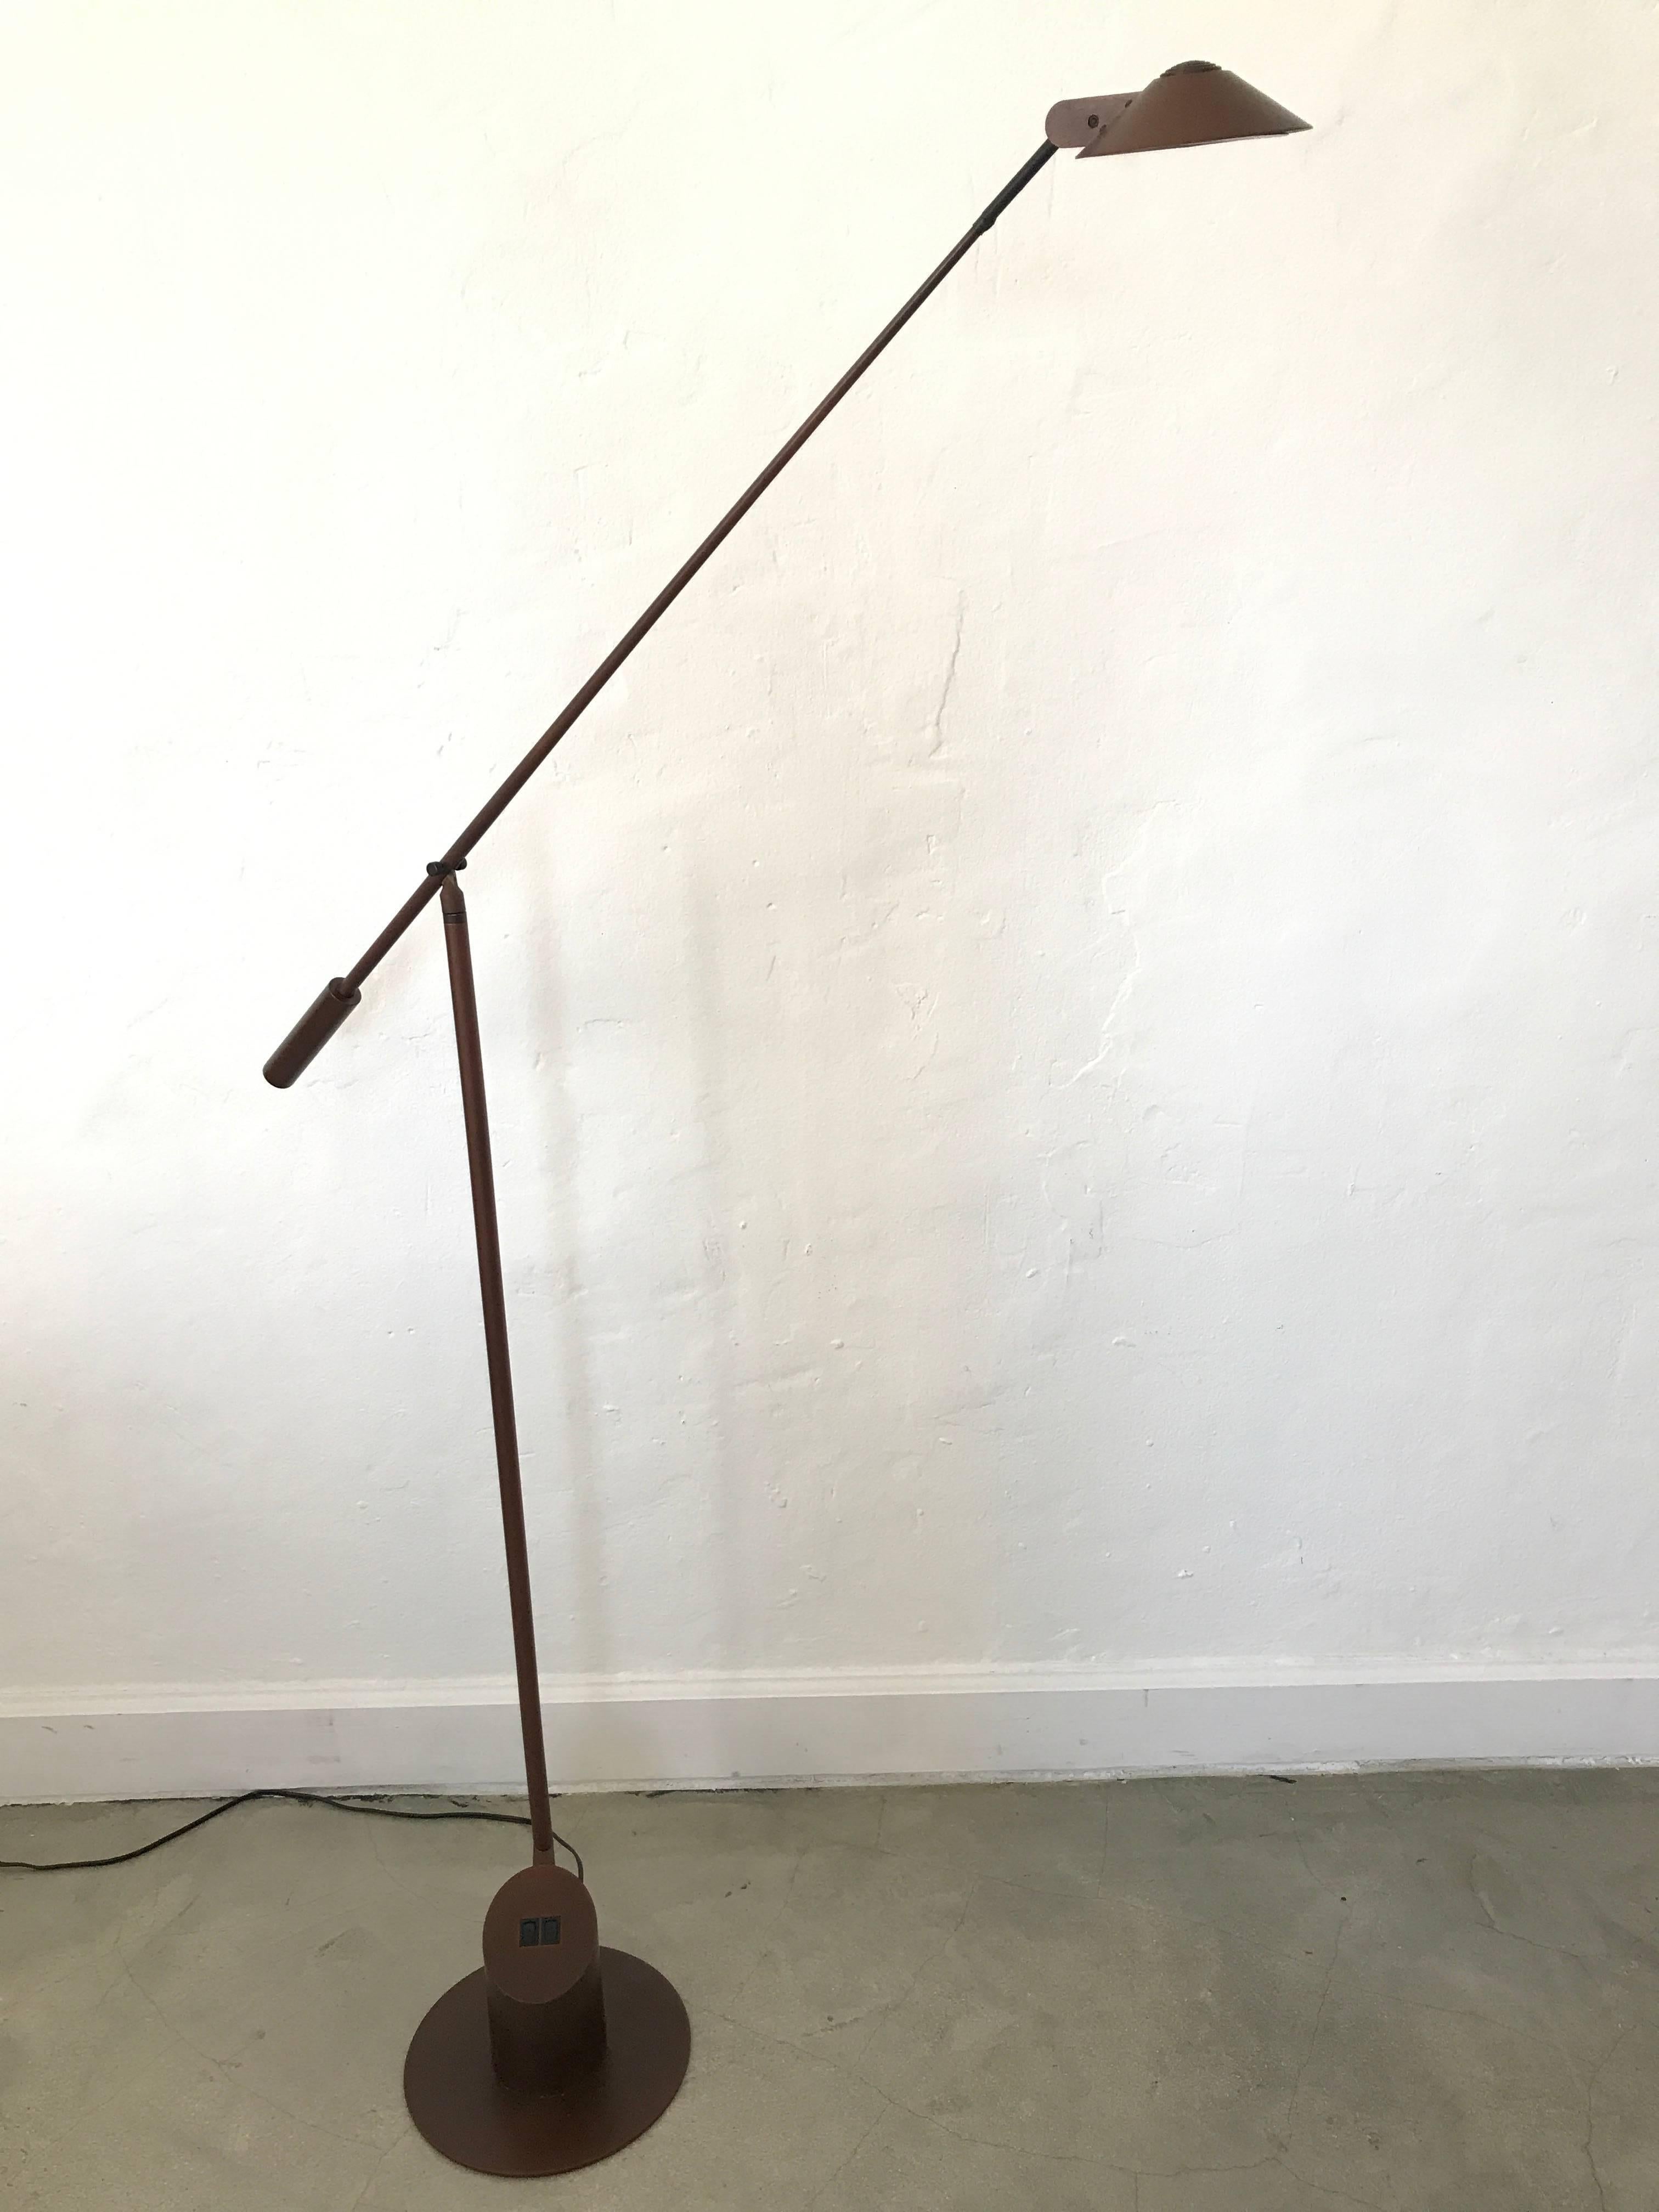 Verstellbare:: mattbraune Stehlampe mit mehreren Lampeneinstellungen von Robert Sonneman für George Kovacs:: 1989.